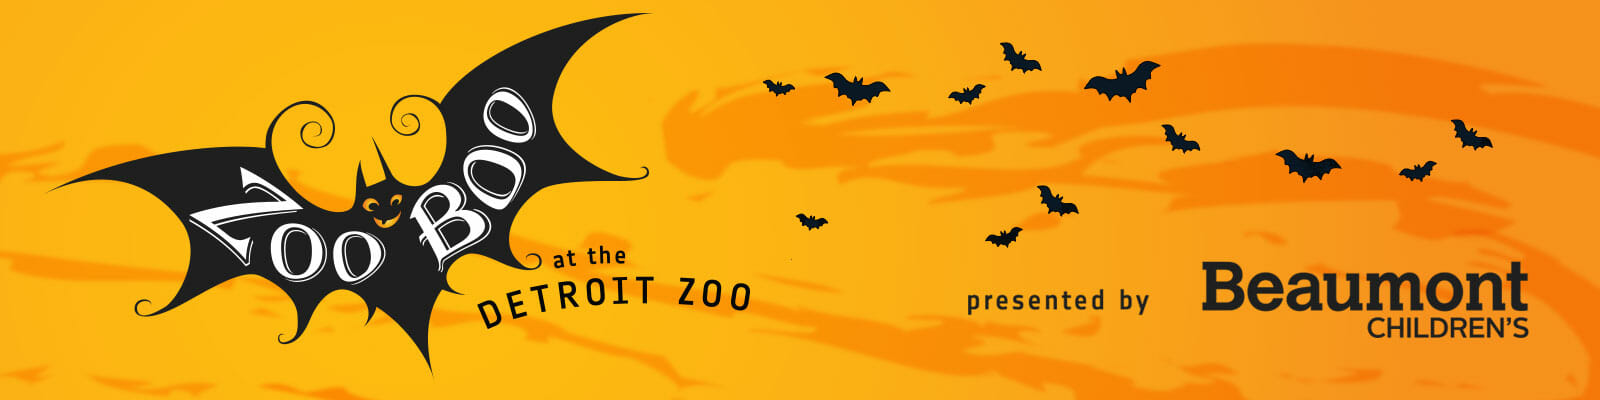 Zoo Boo Logo